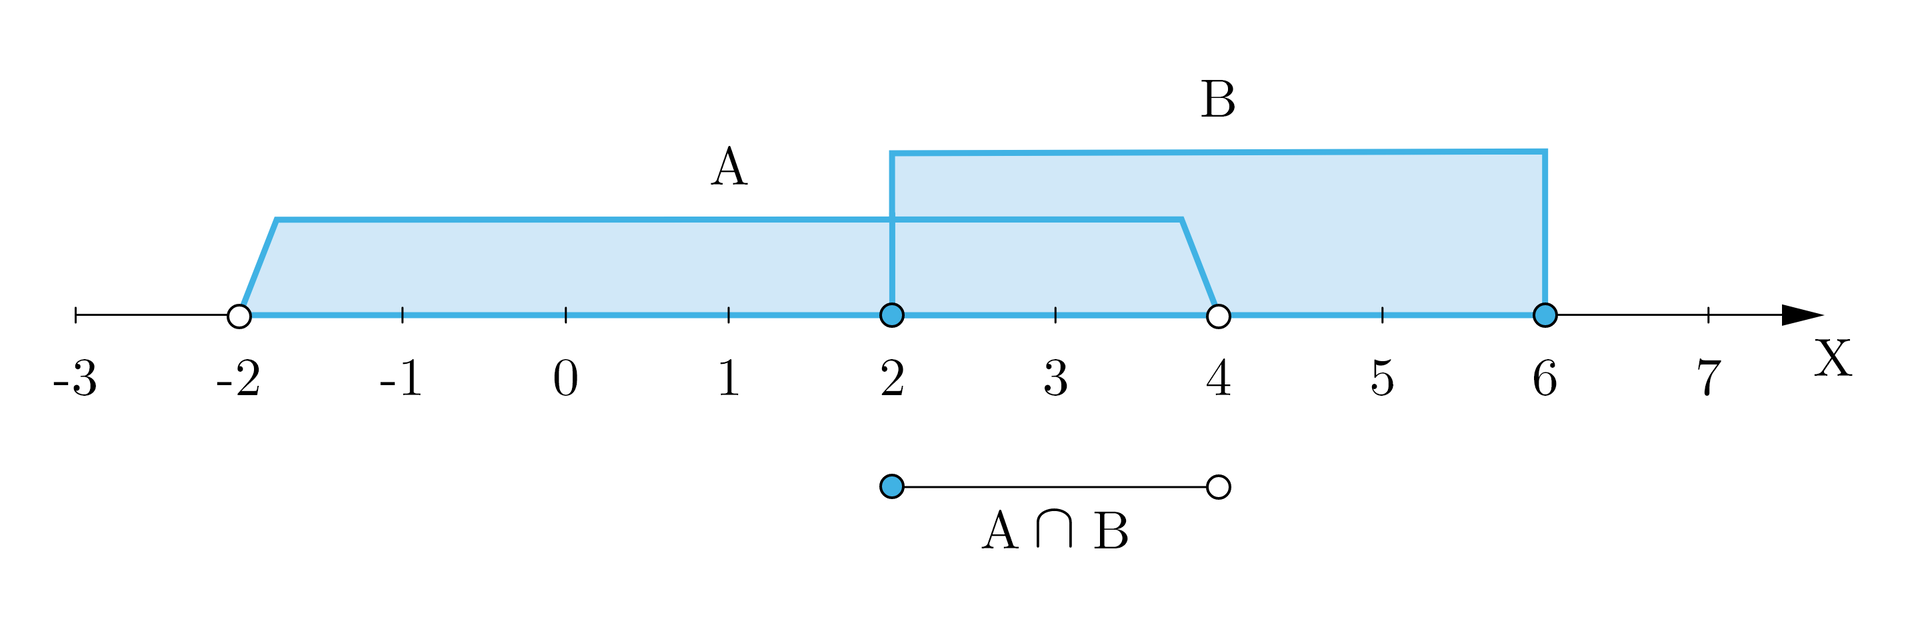 Ilustracja przedstawia oś iks z wartościami od minus trzy do siedem. Od minus dwa do cztery oznaczono zbiór a, od dwa do sześć oznaczono zbiór be. Od dwa do cztery oznaczono odcinek opisany jako iloczyn zbiorów a i be